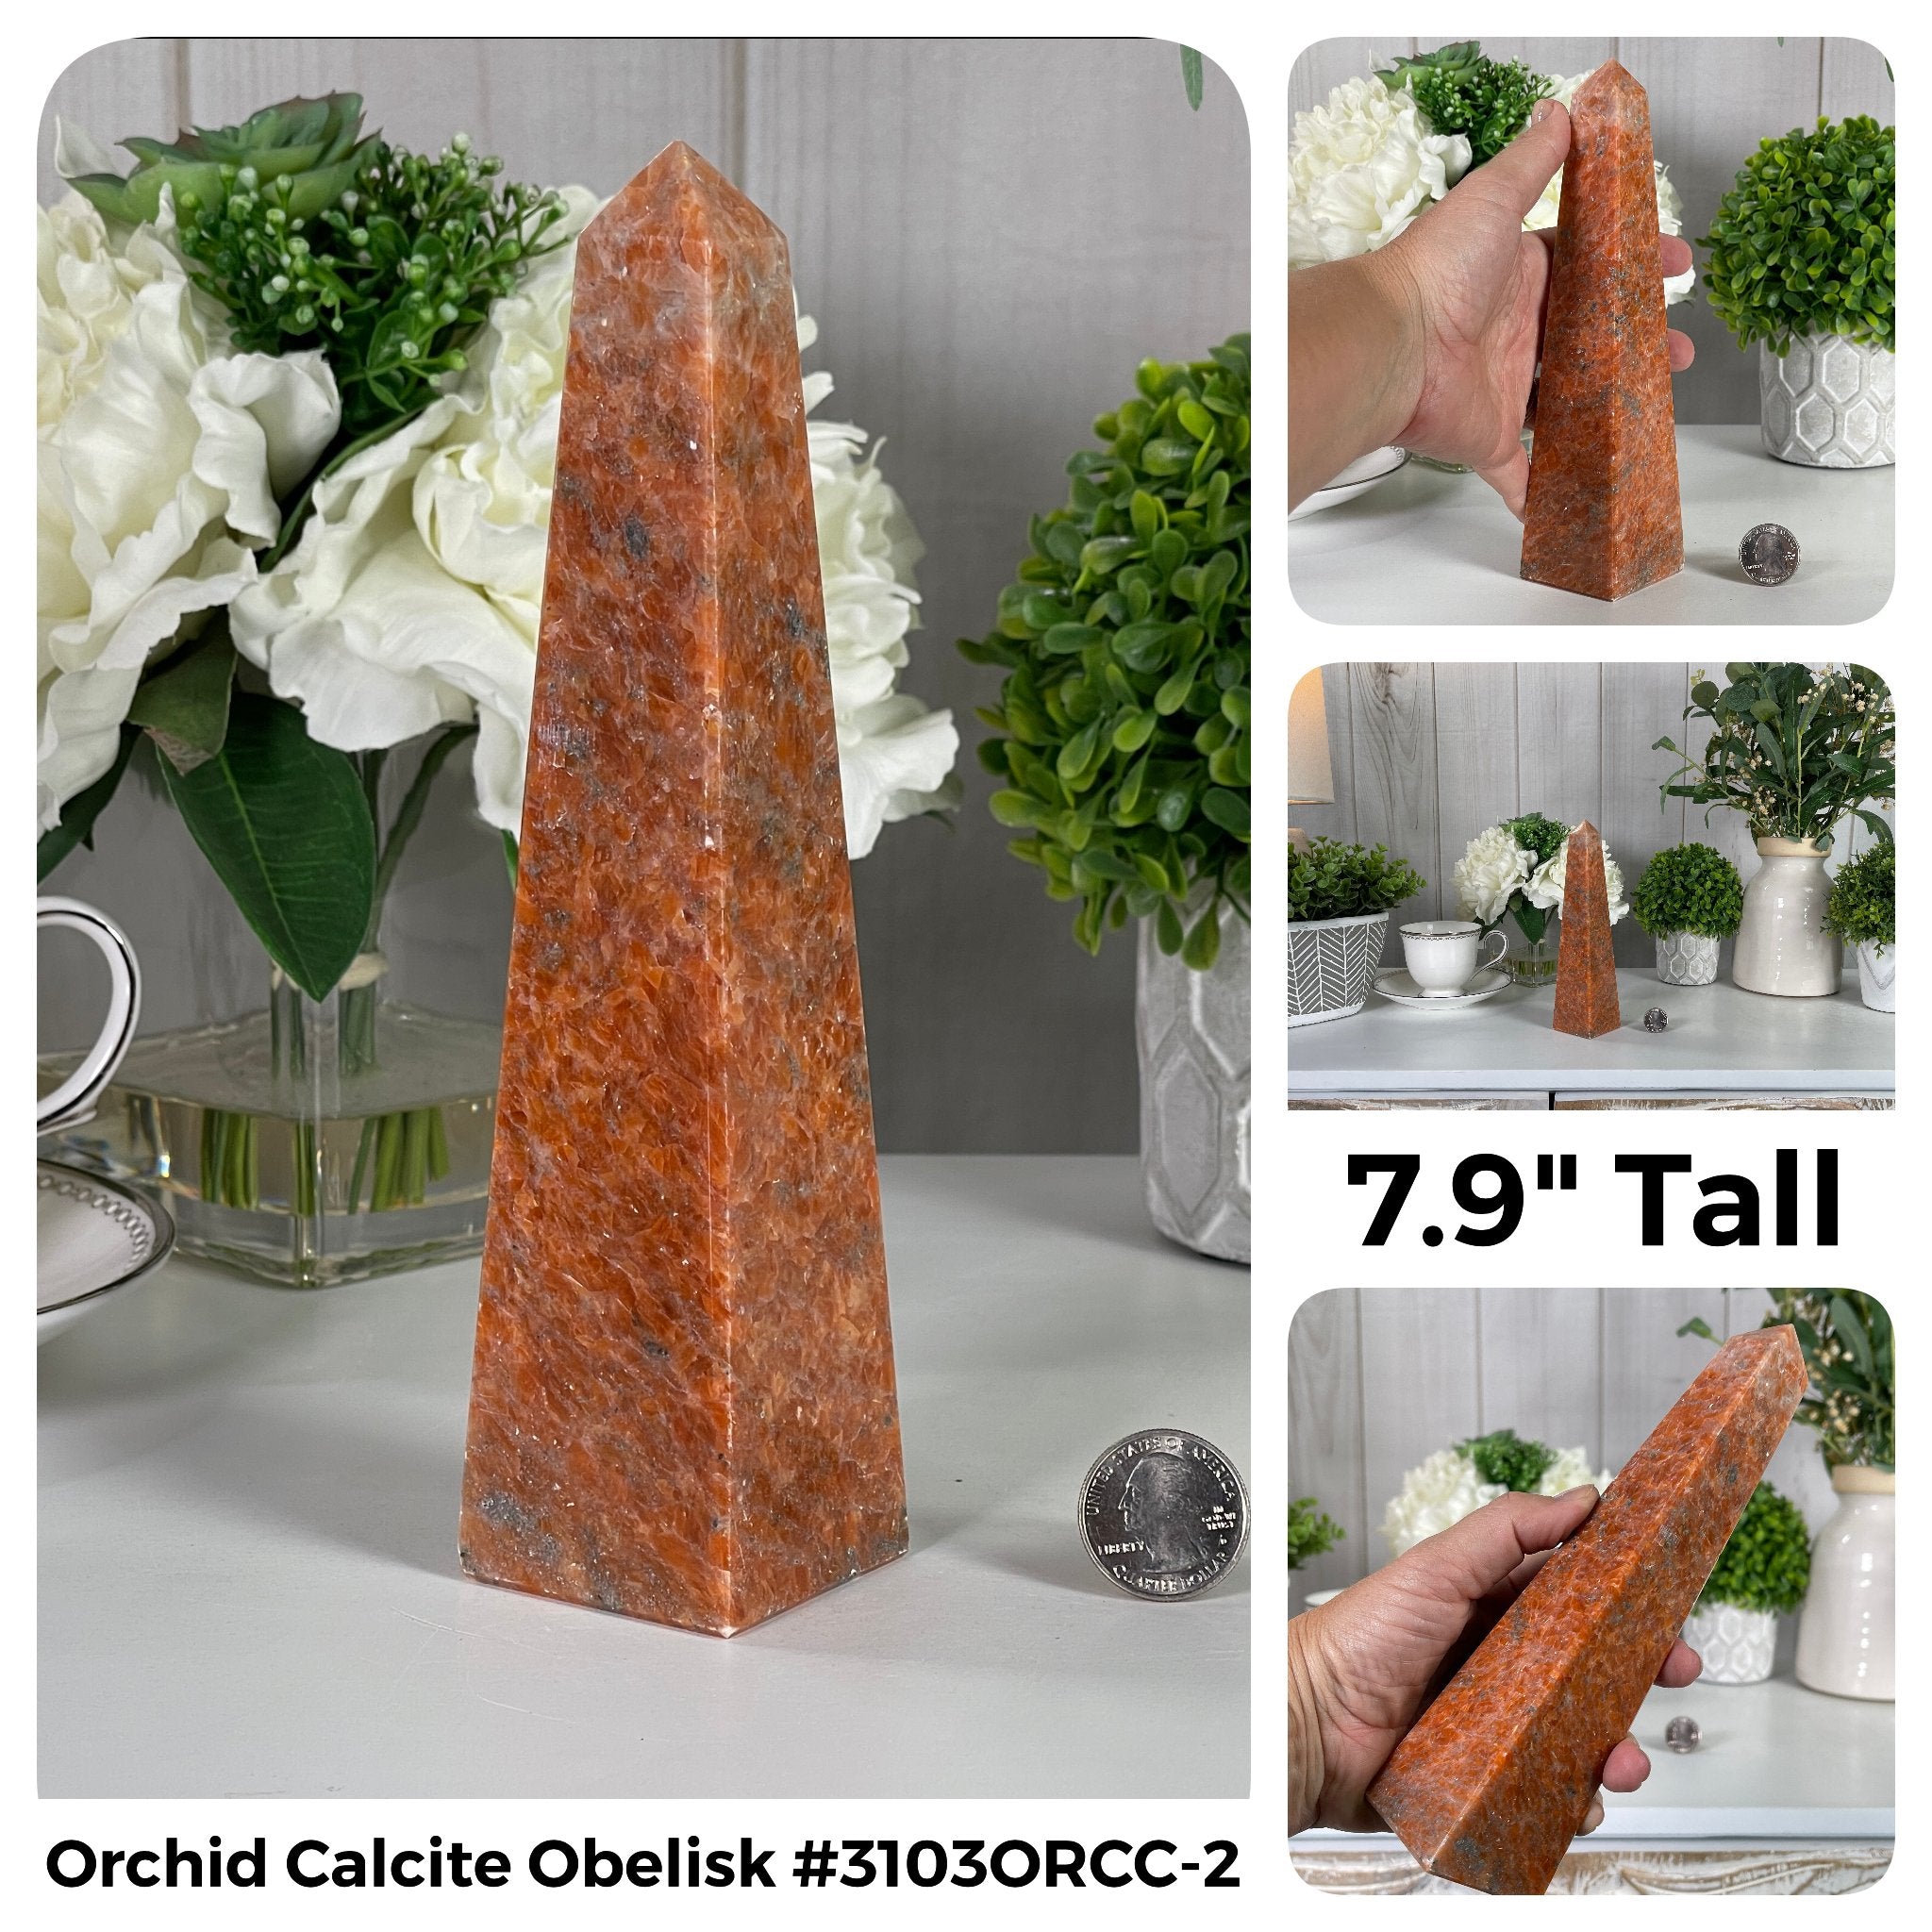 Gemstone Obelisks in Different Gem Types Model #3103 by Brazil Gems - Brazil GemsBrazil GemsGemstone Obelisks in Different Gem Types Model #3103 by Brazil GemsObelisks3104OC-002